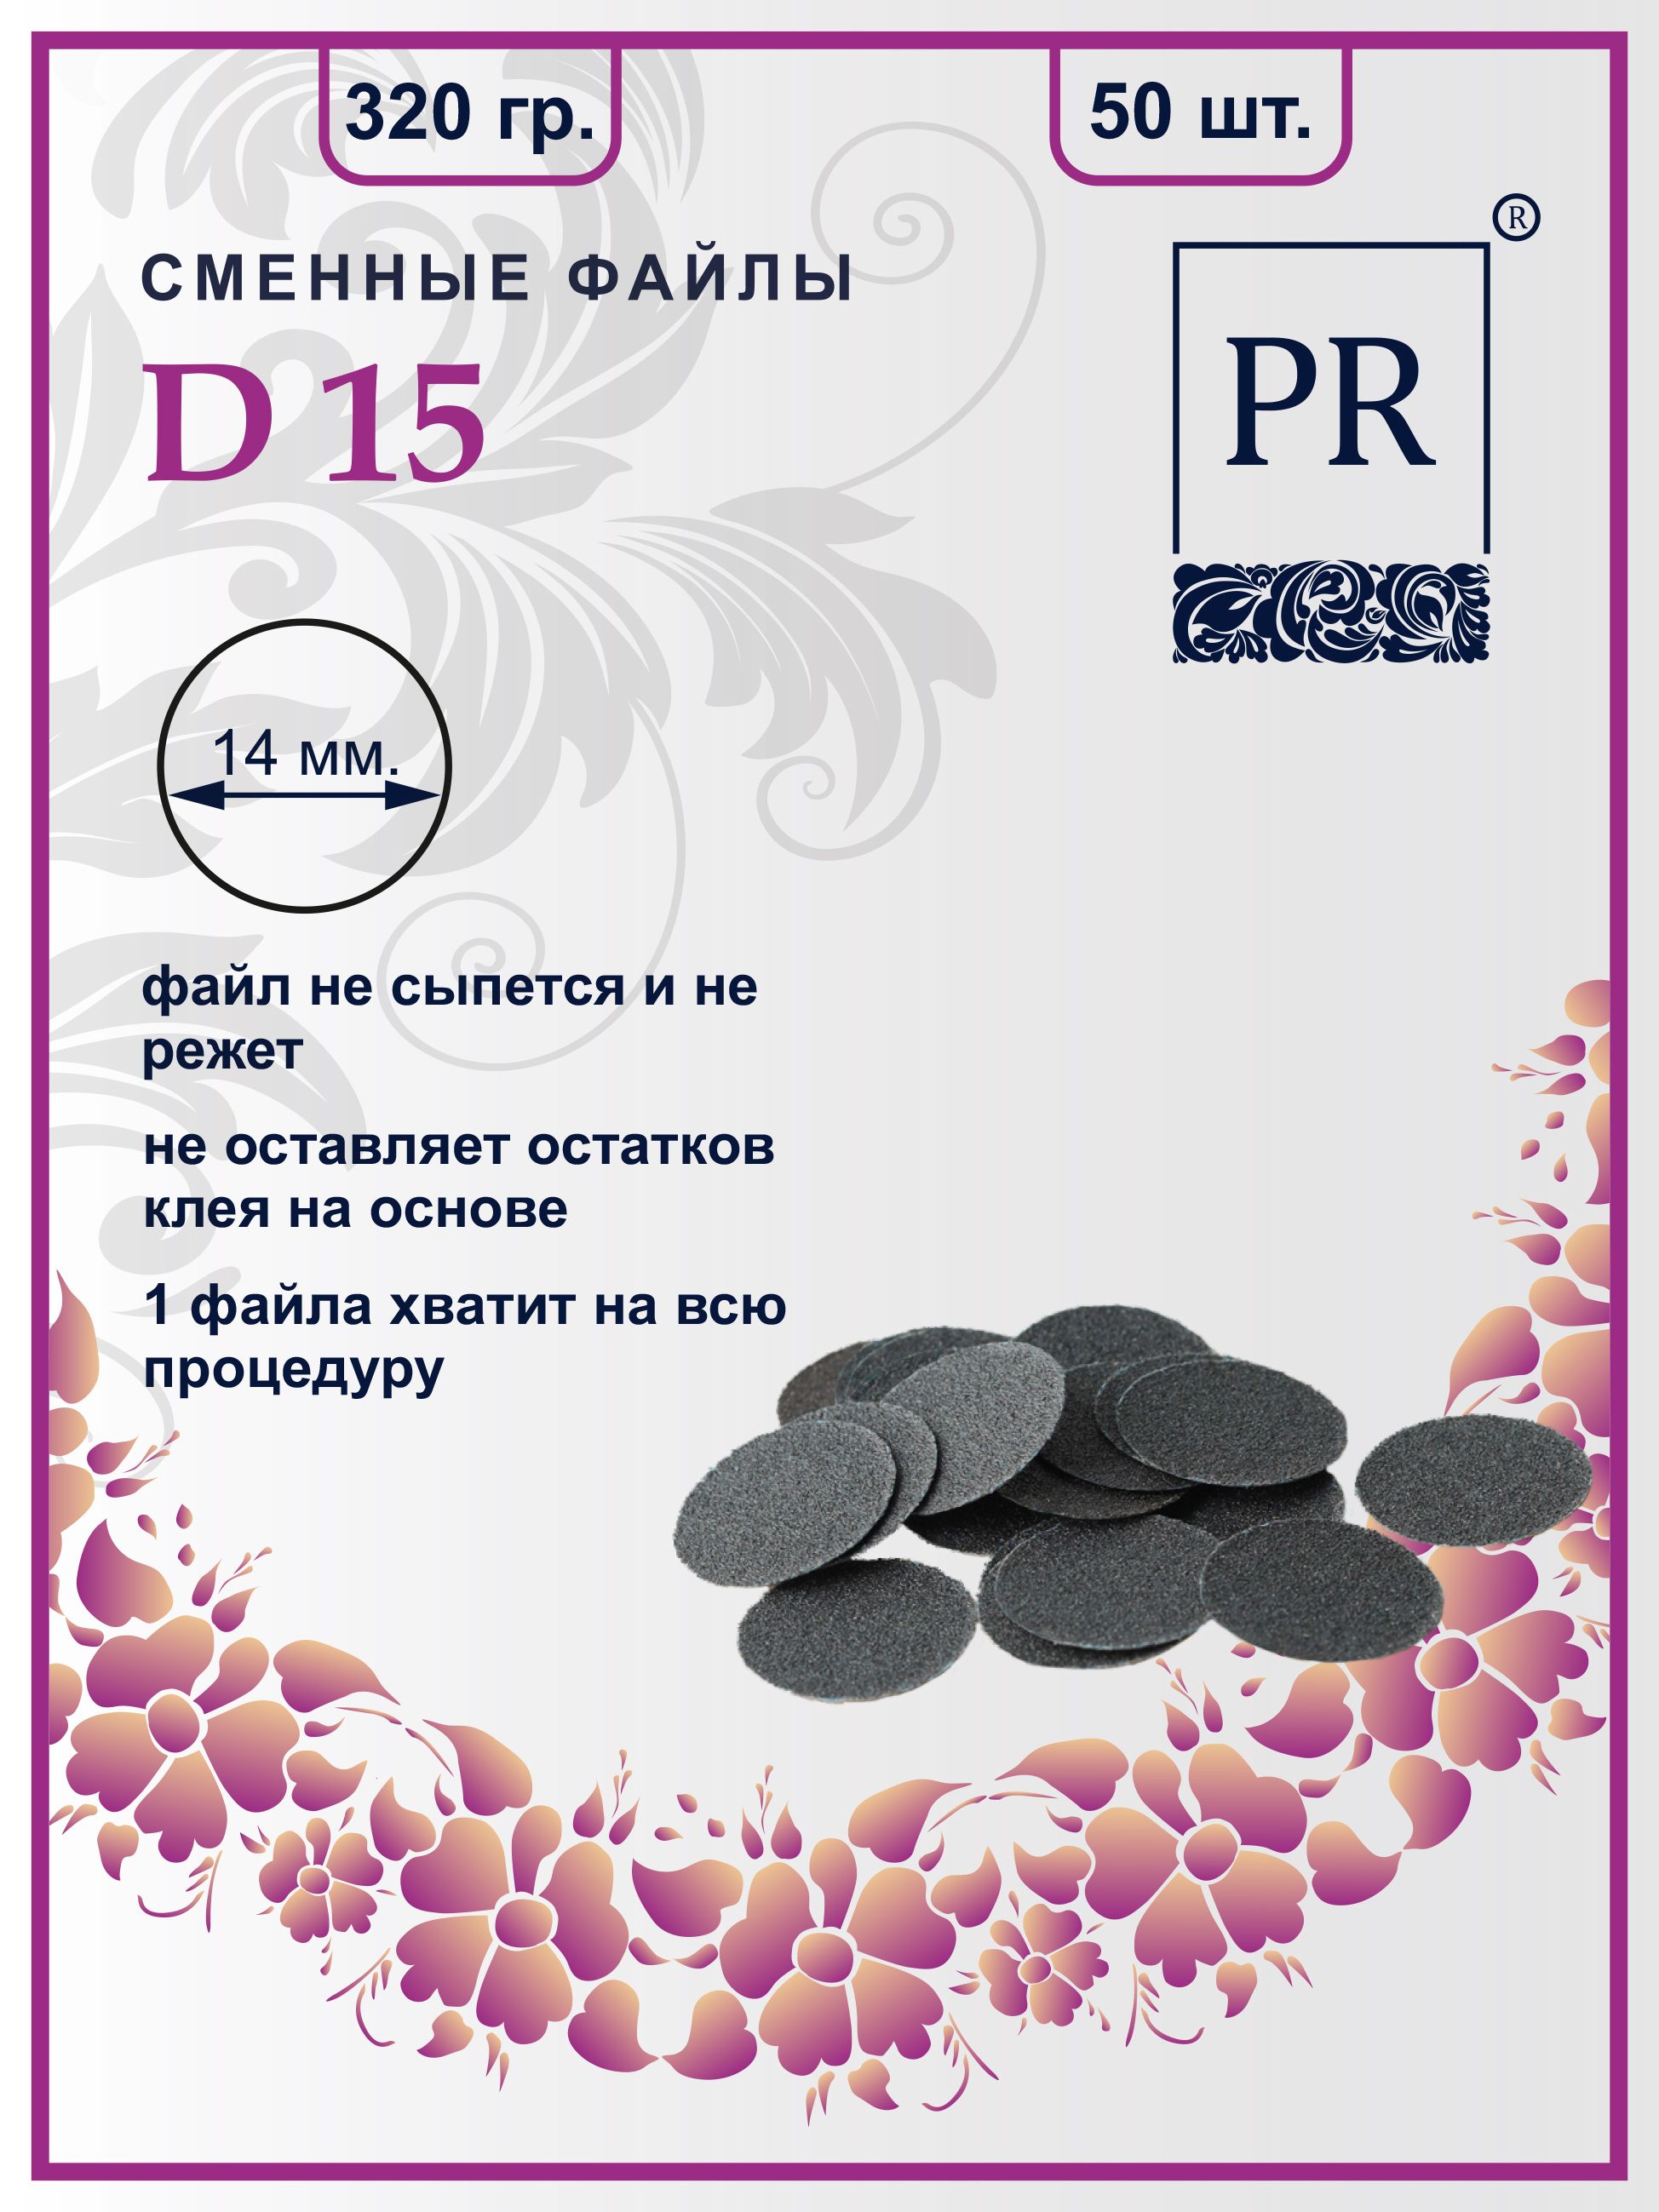 Сменные файлы Pilochki Russia диски для педикюра для диска S 320 грит 50 штук сменные файлы smart одноразовые для пилки основы лодочка м 13 см 100 грит черные 50 шт